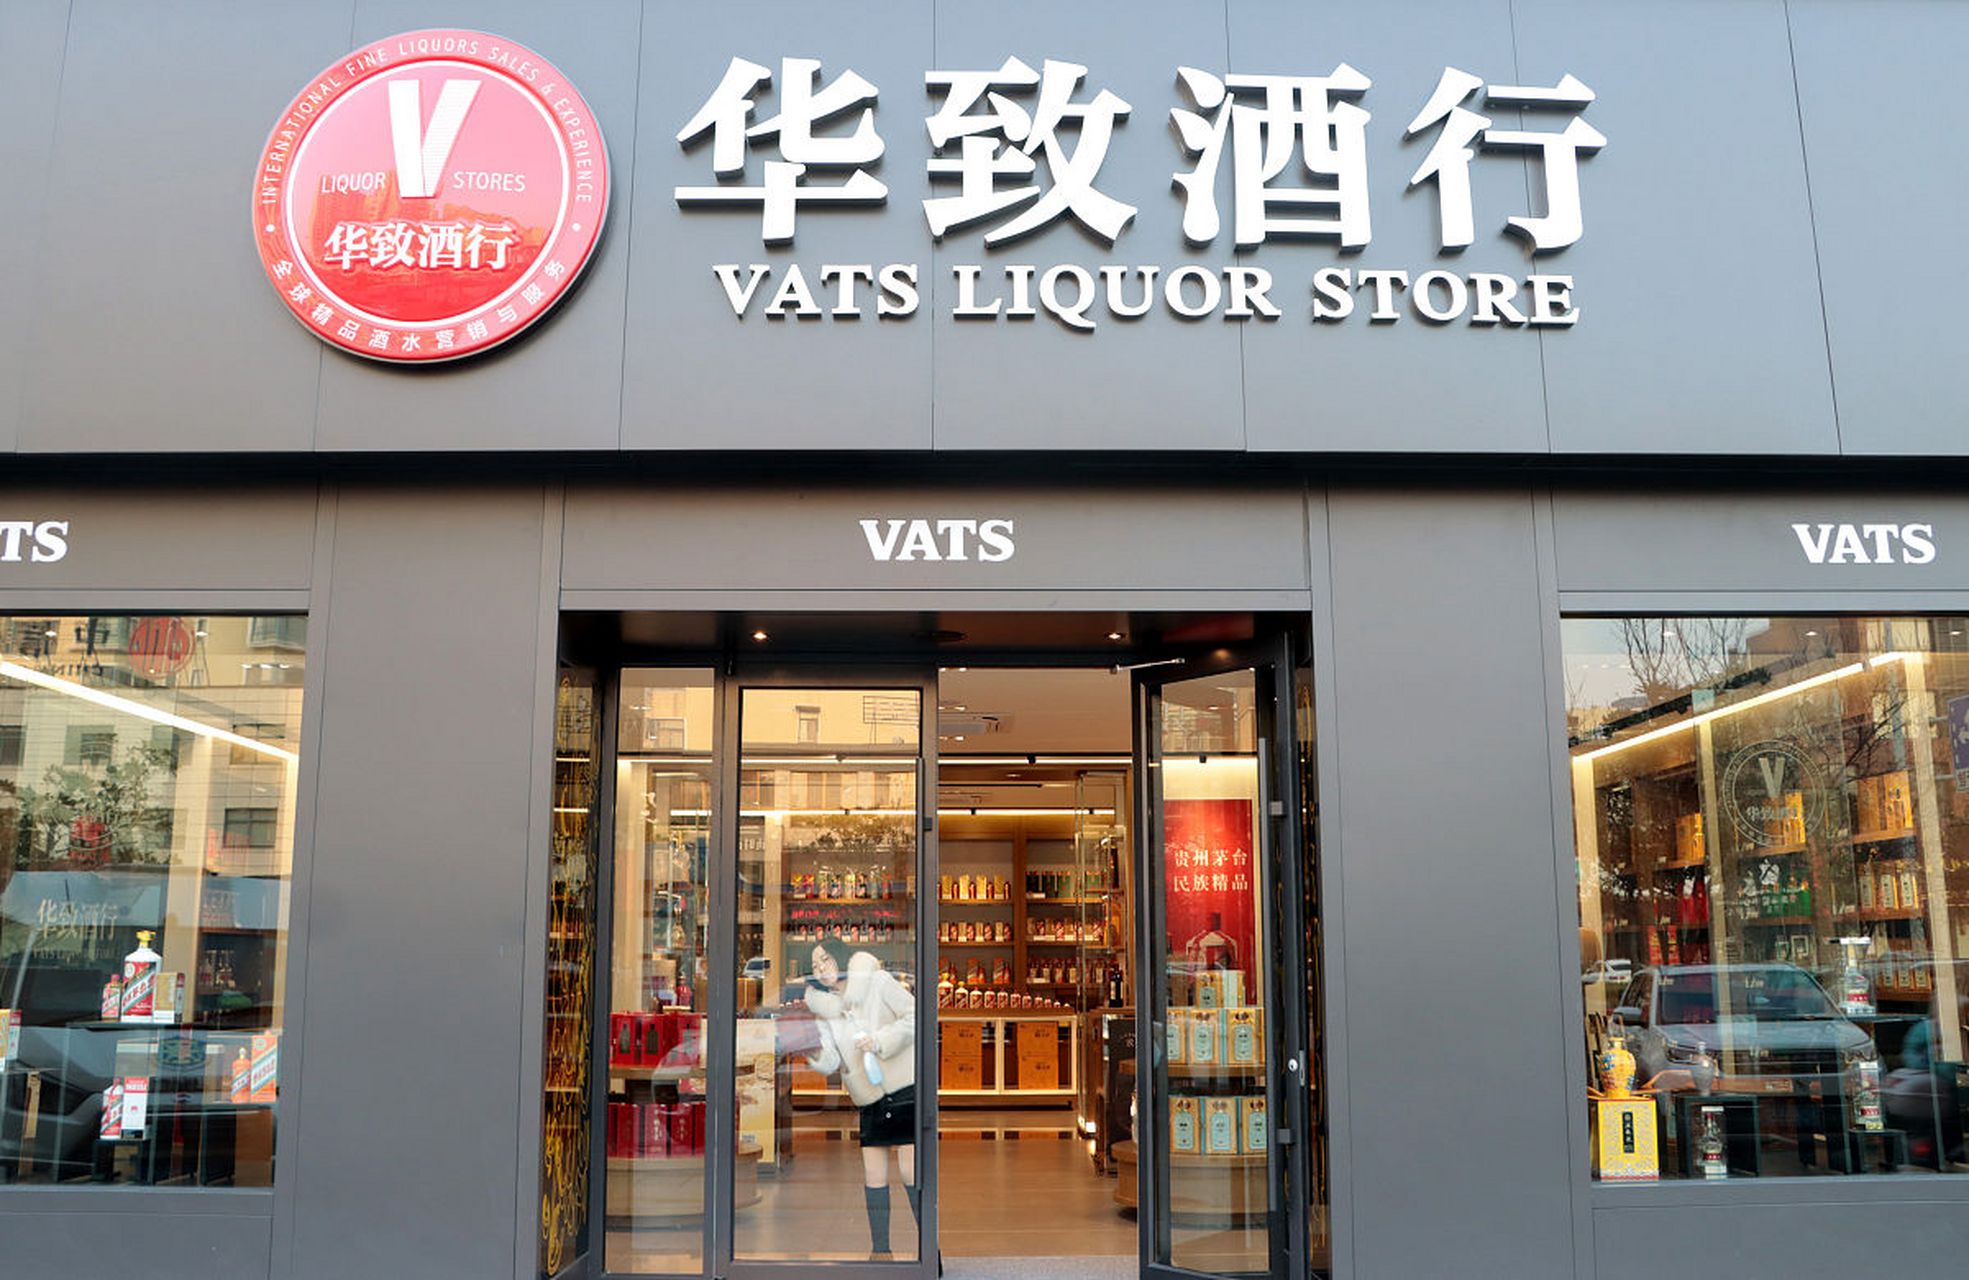 华致酒行是中国酒类流通行业的领军企业,其总部位于北京市朝阳区,这里